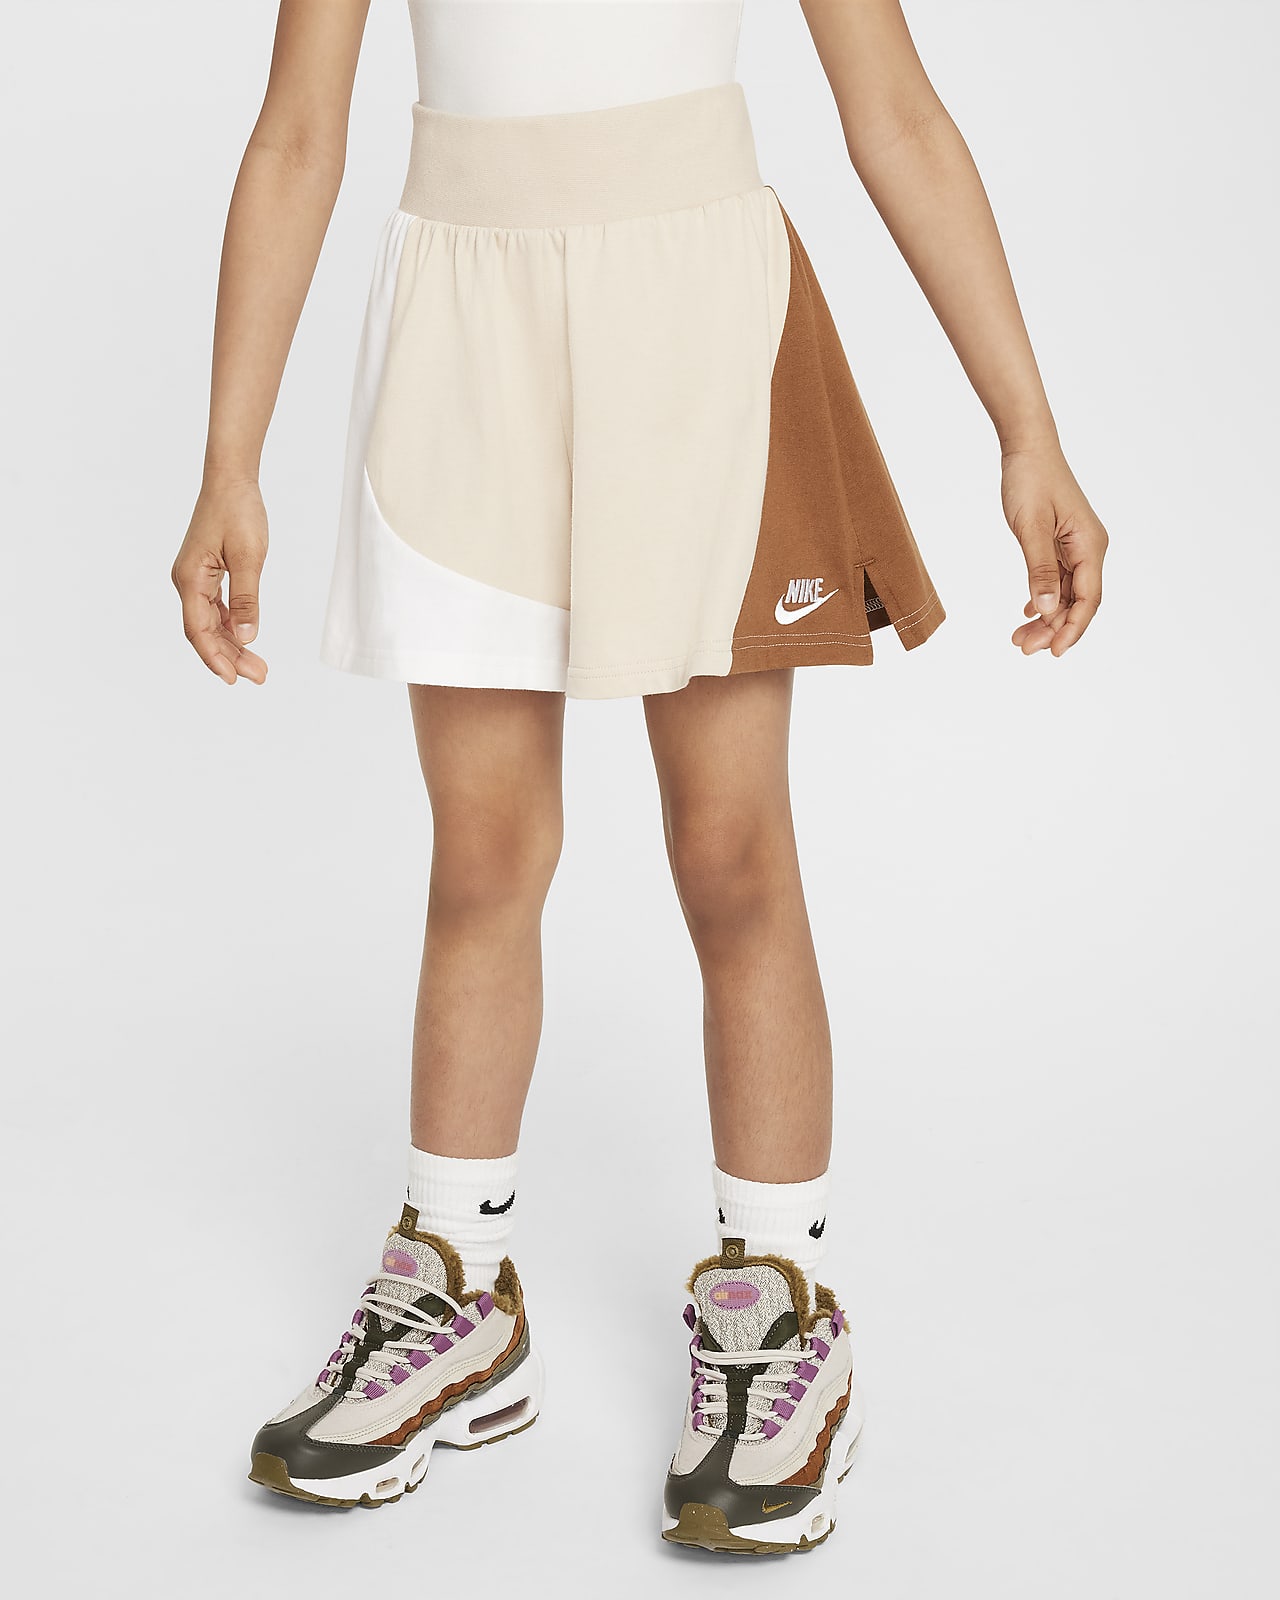 Calções de malha Jersey Nike Sportswear Júnior (Rapariga)